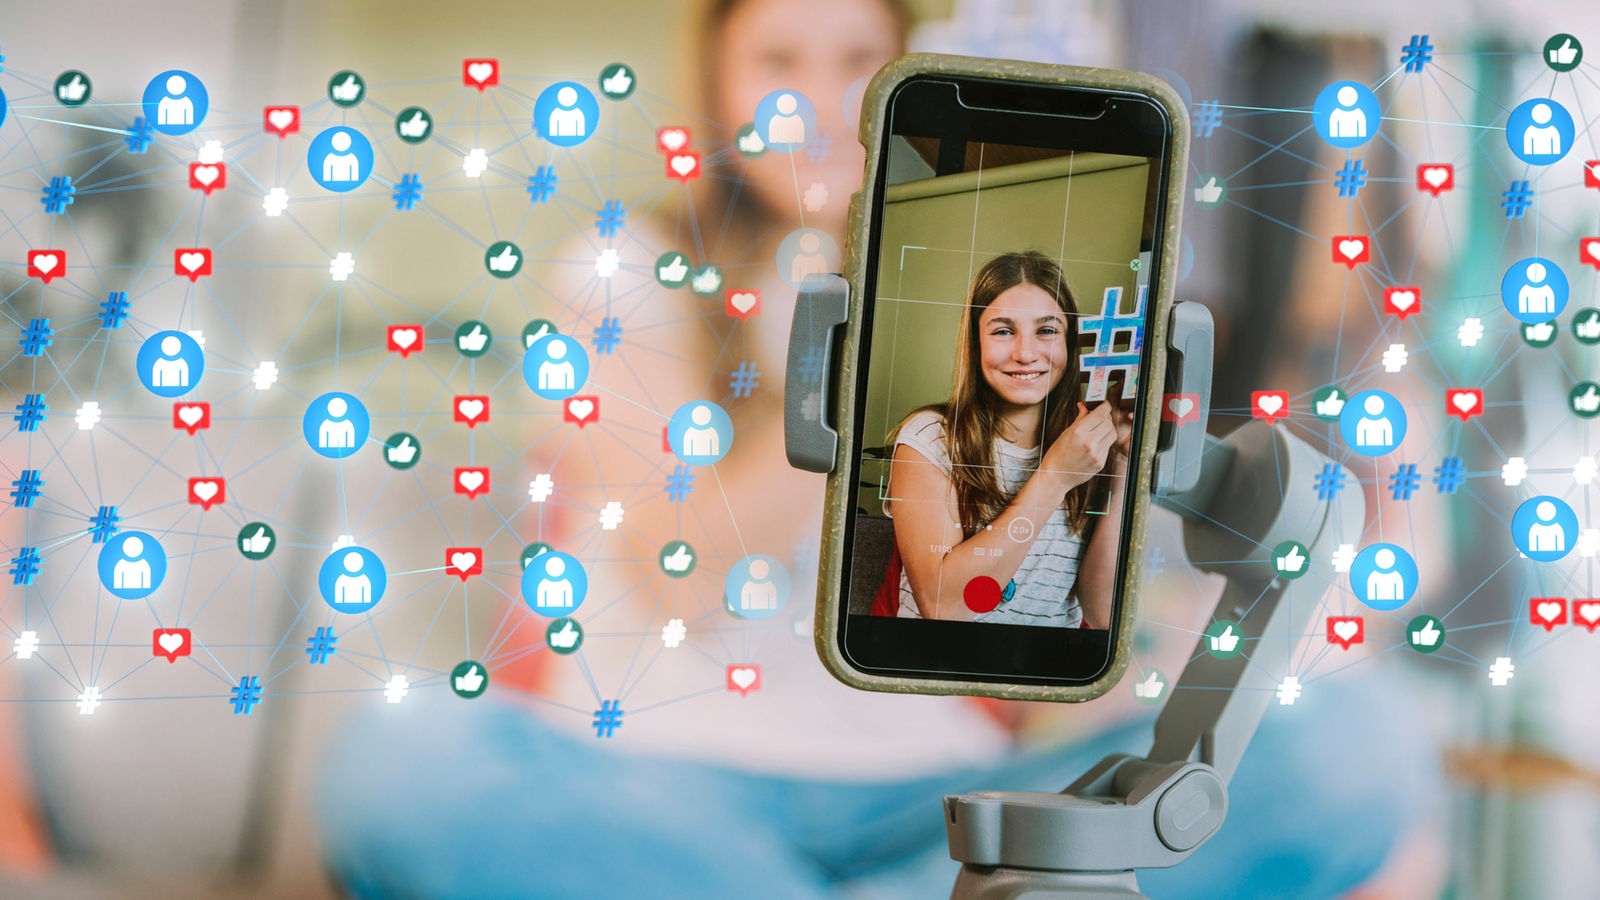 Fotocollage: Smartphone auf Stativ, das eine junge Influencerin zeigt. Daneben zahlreiche Symbole und Emojis